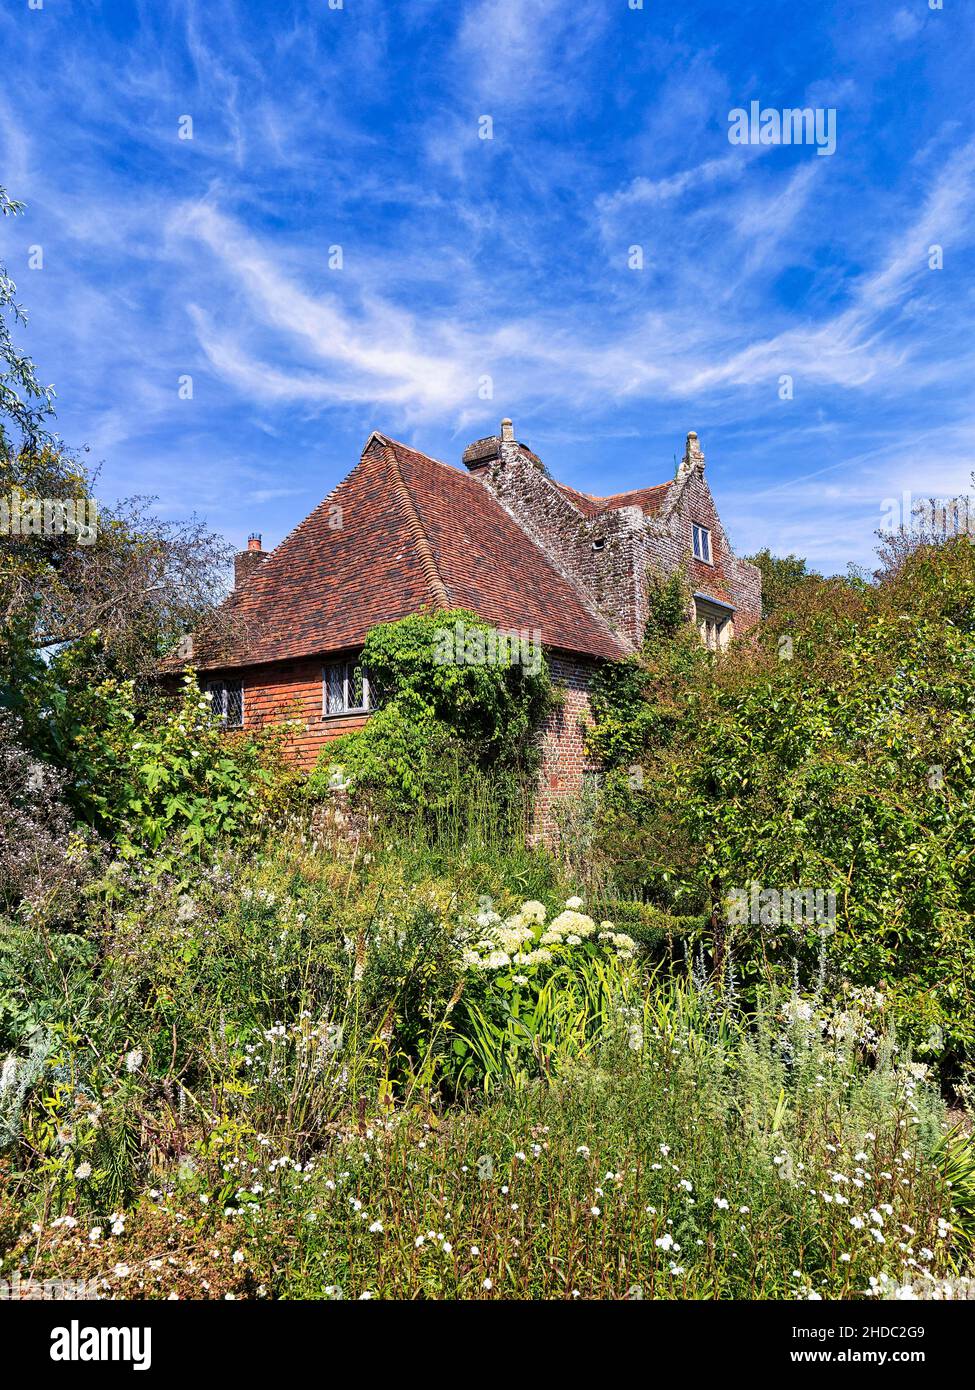 Red Brick Cottage, Maison des prêtres, Château et jardin de Sissinghurst, Cranbrook, Kent, Angleterre, Royaume-Uni Banque D'Images